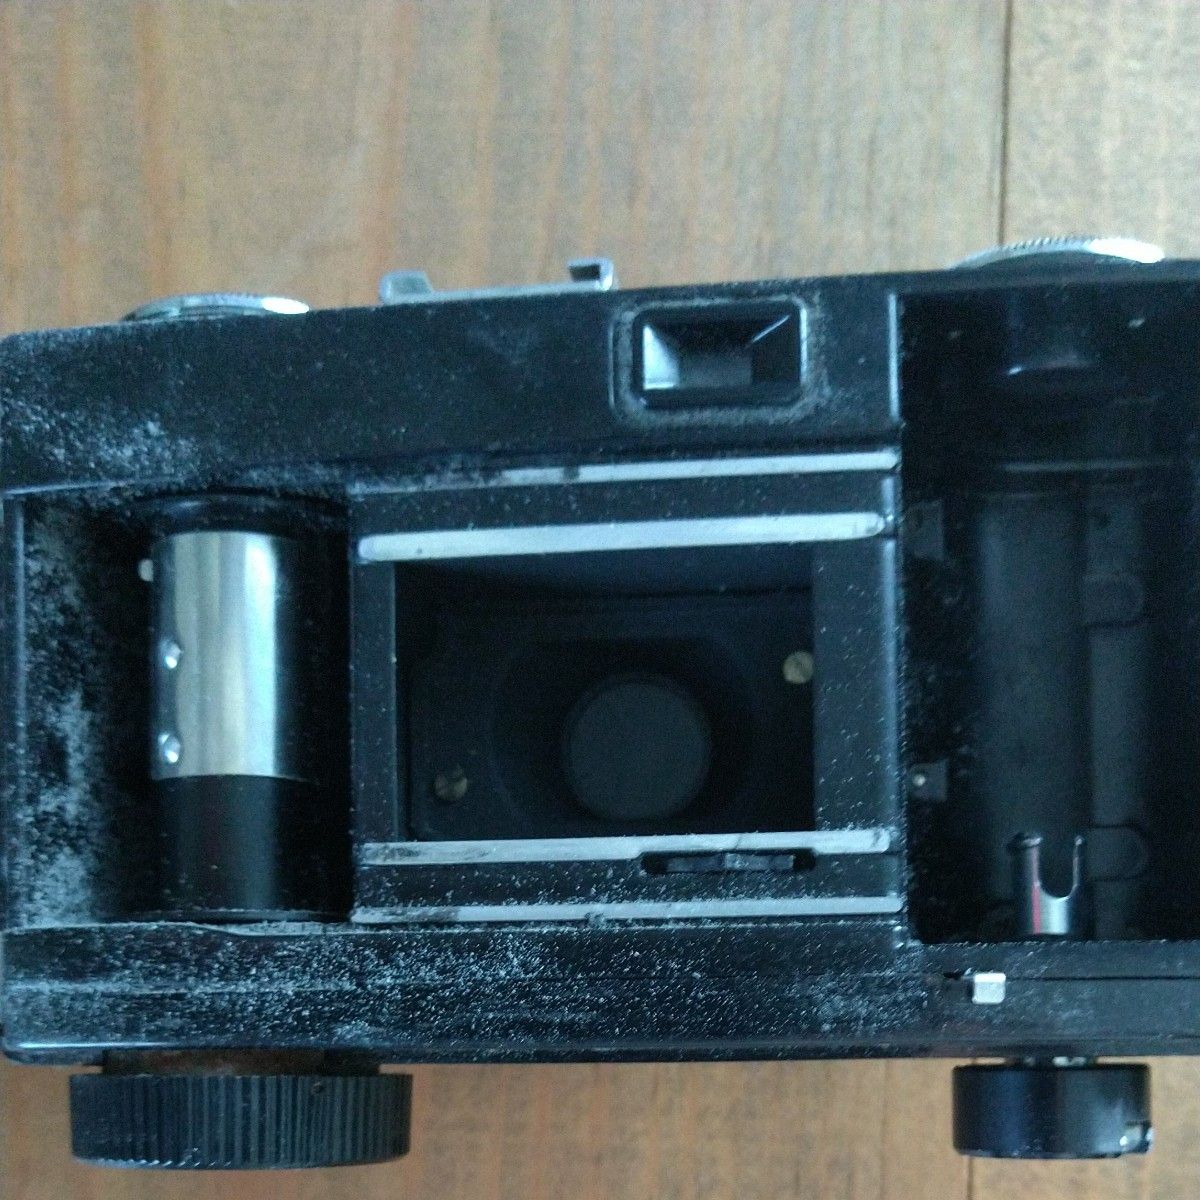 リコーハイカラー35Sカメラ